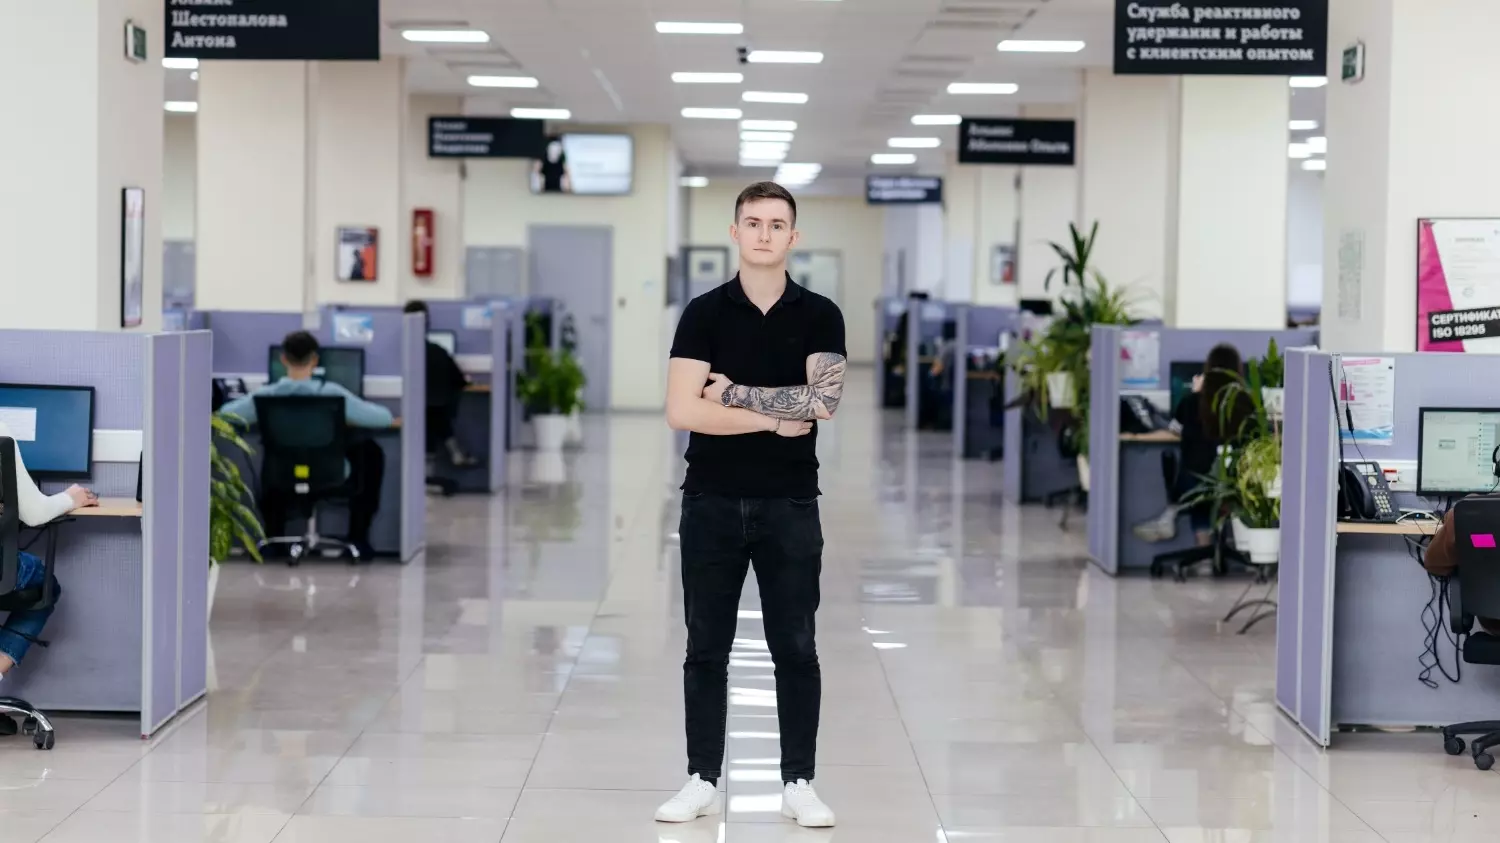 Руководитель группы абонентского обслуживания Дмитрий Гончаров сейчас на последнем курсе ДГТУ. Он пришел в компанию три года назад